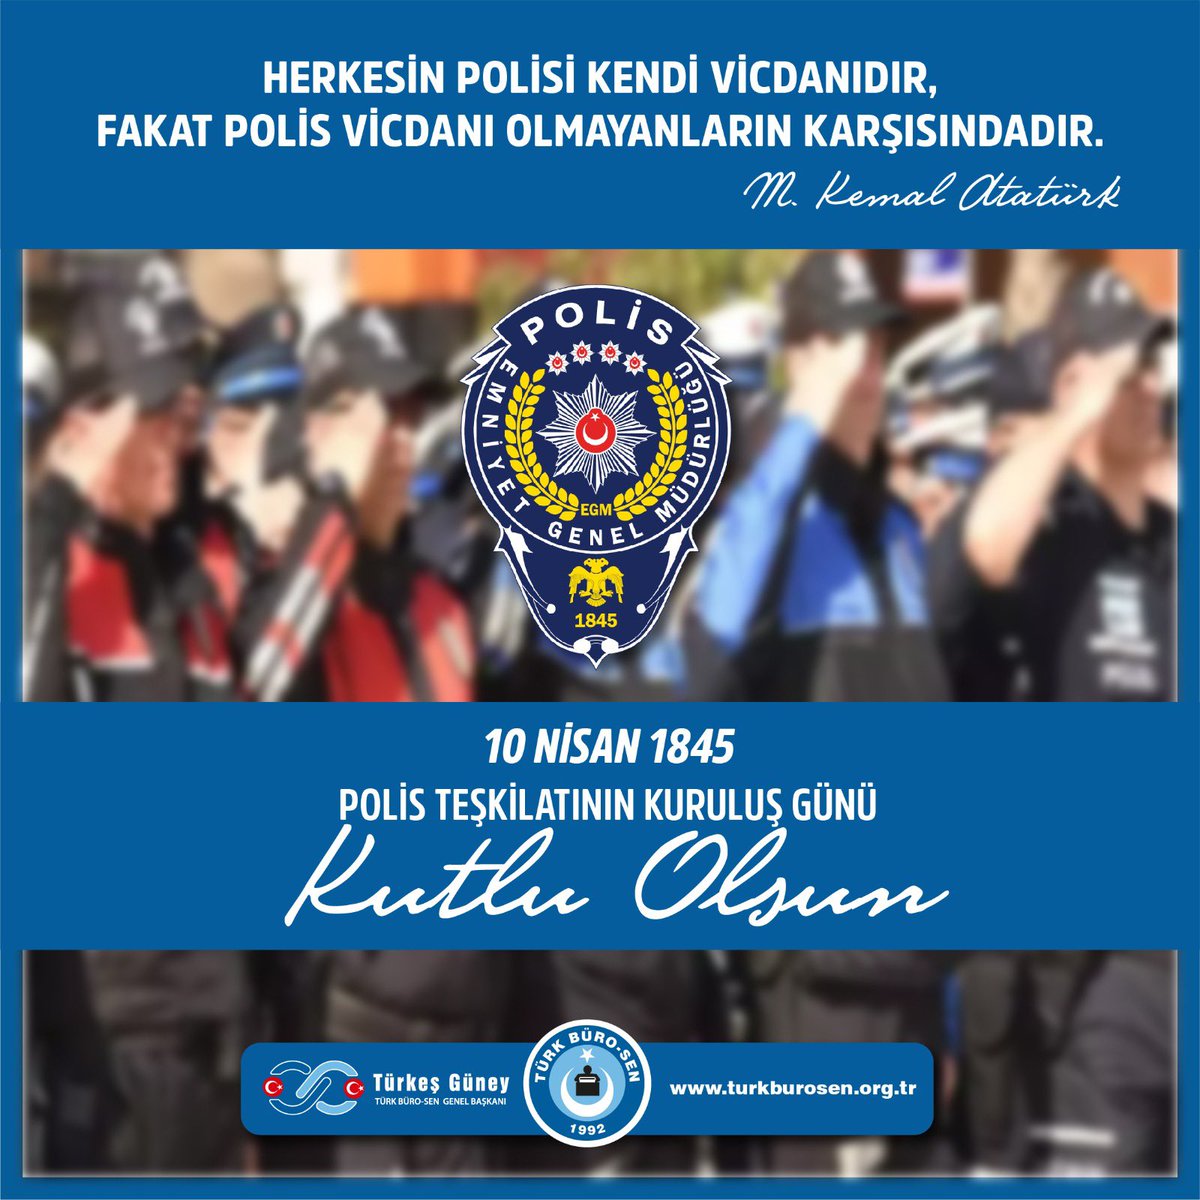 Polisimiz şamar oğlanı değildir. Devletimizin ve polisimizin yanındayız. #TürkPolisi